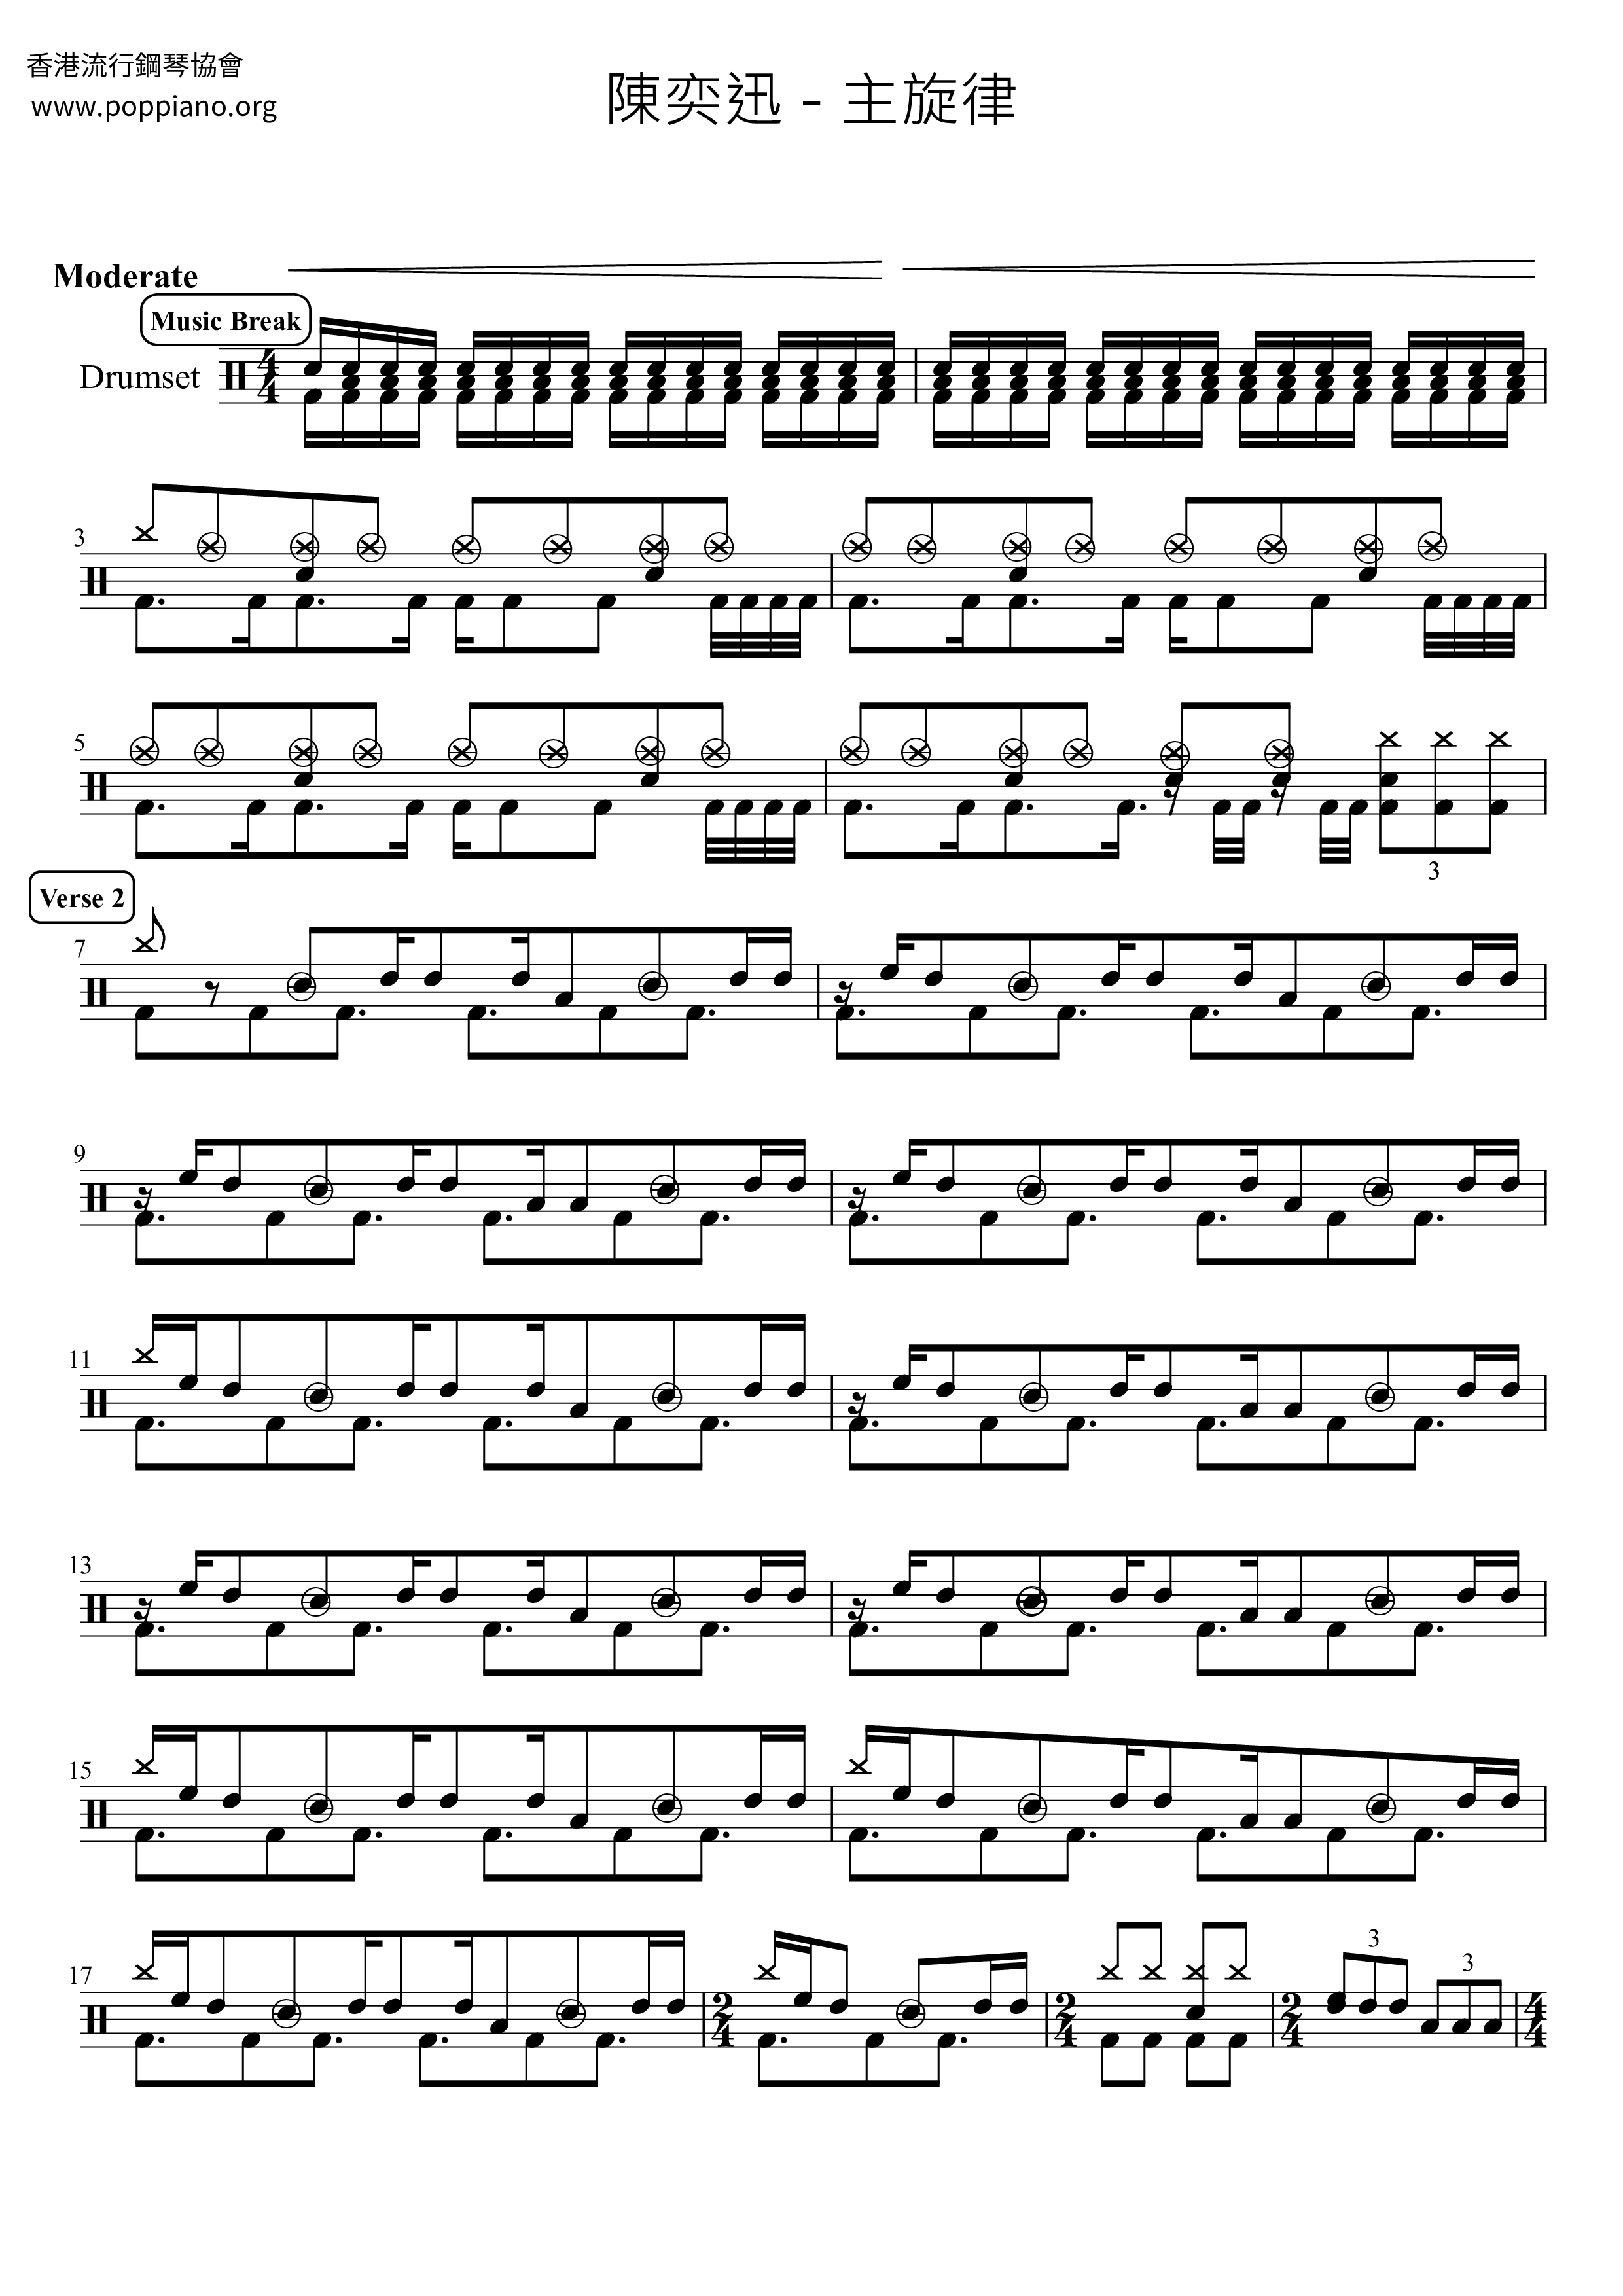 Main Melody Score